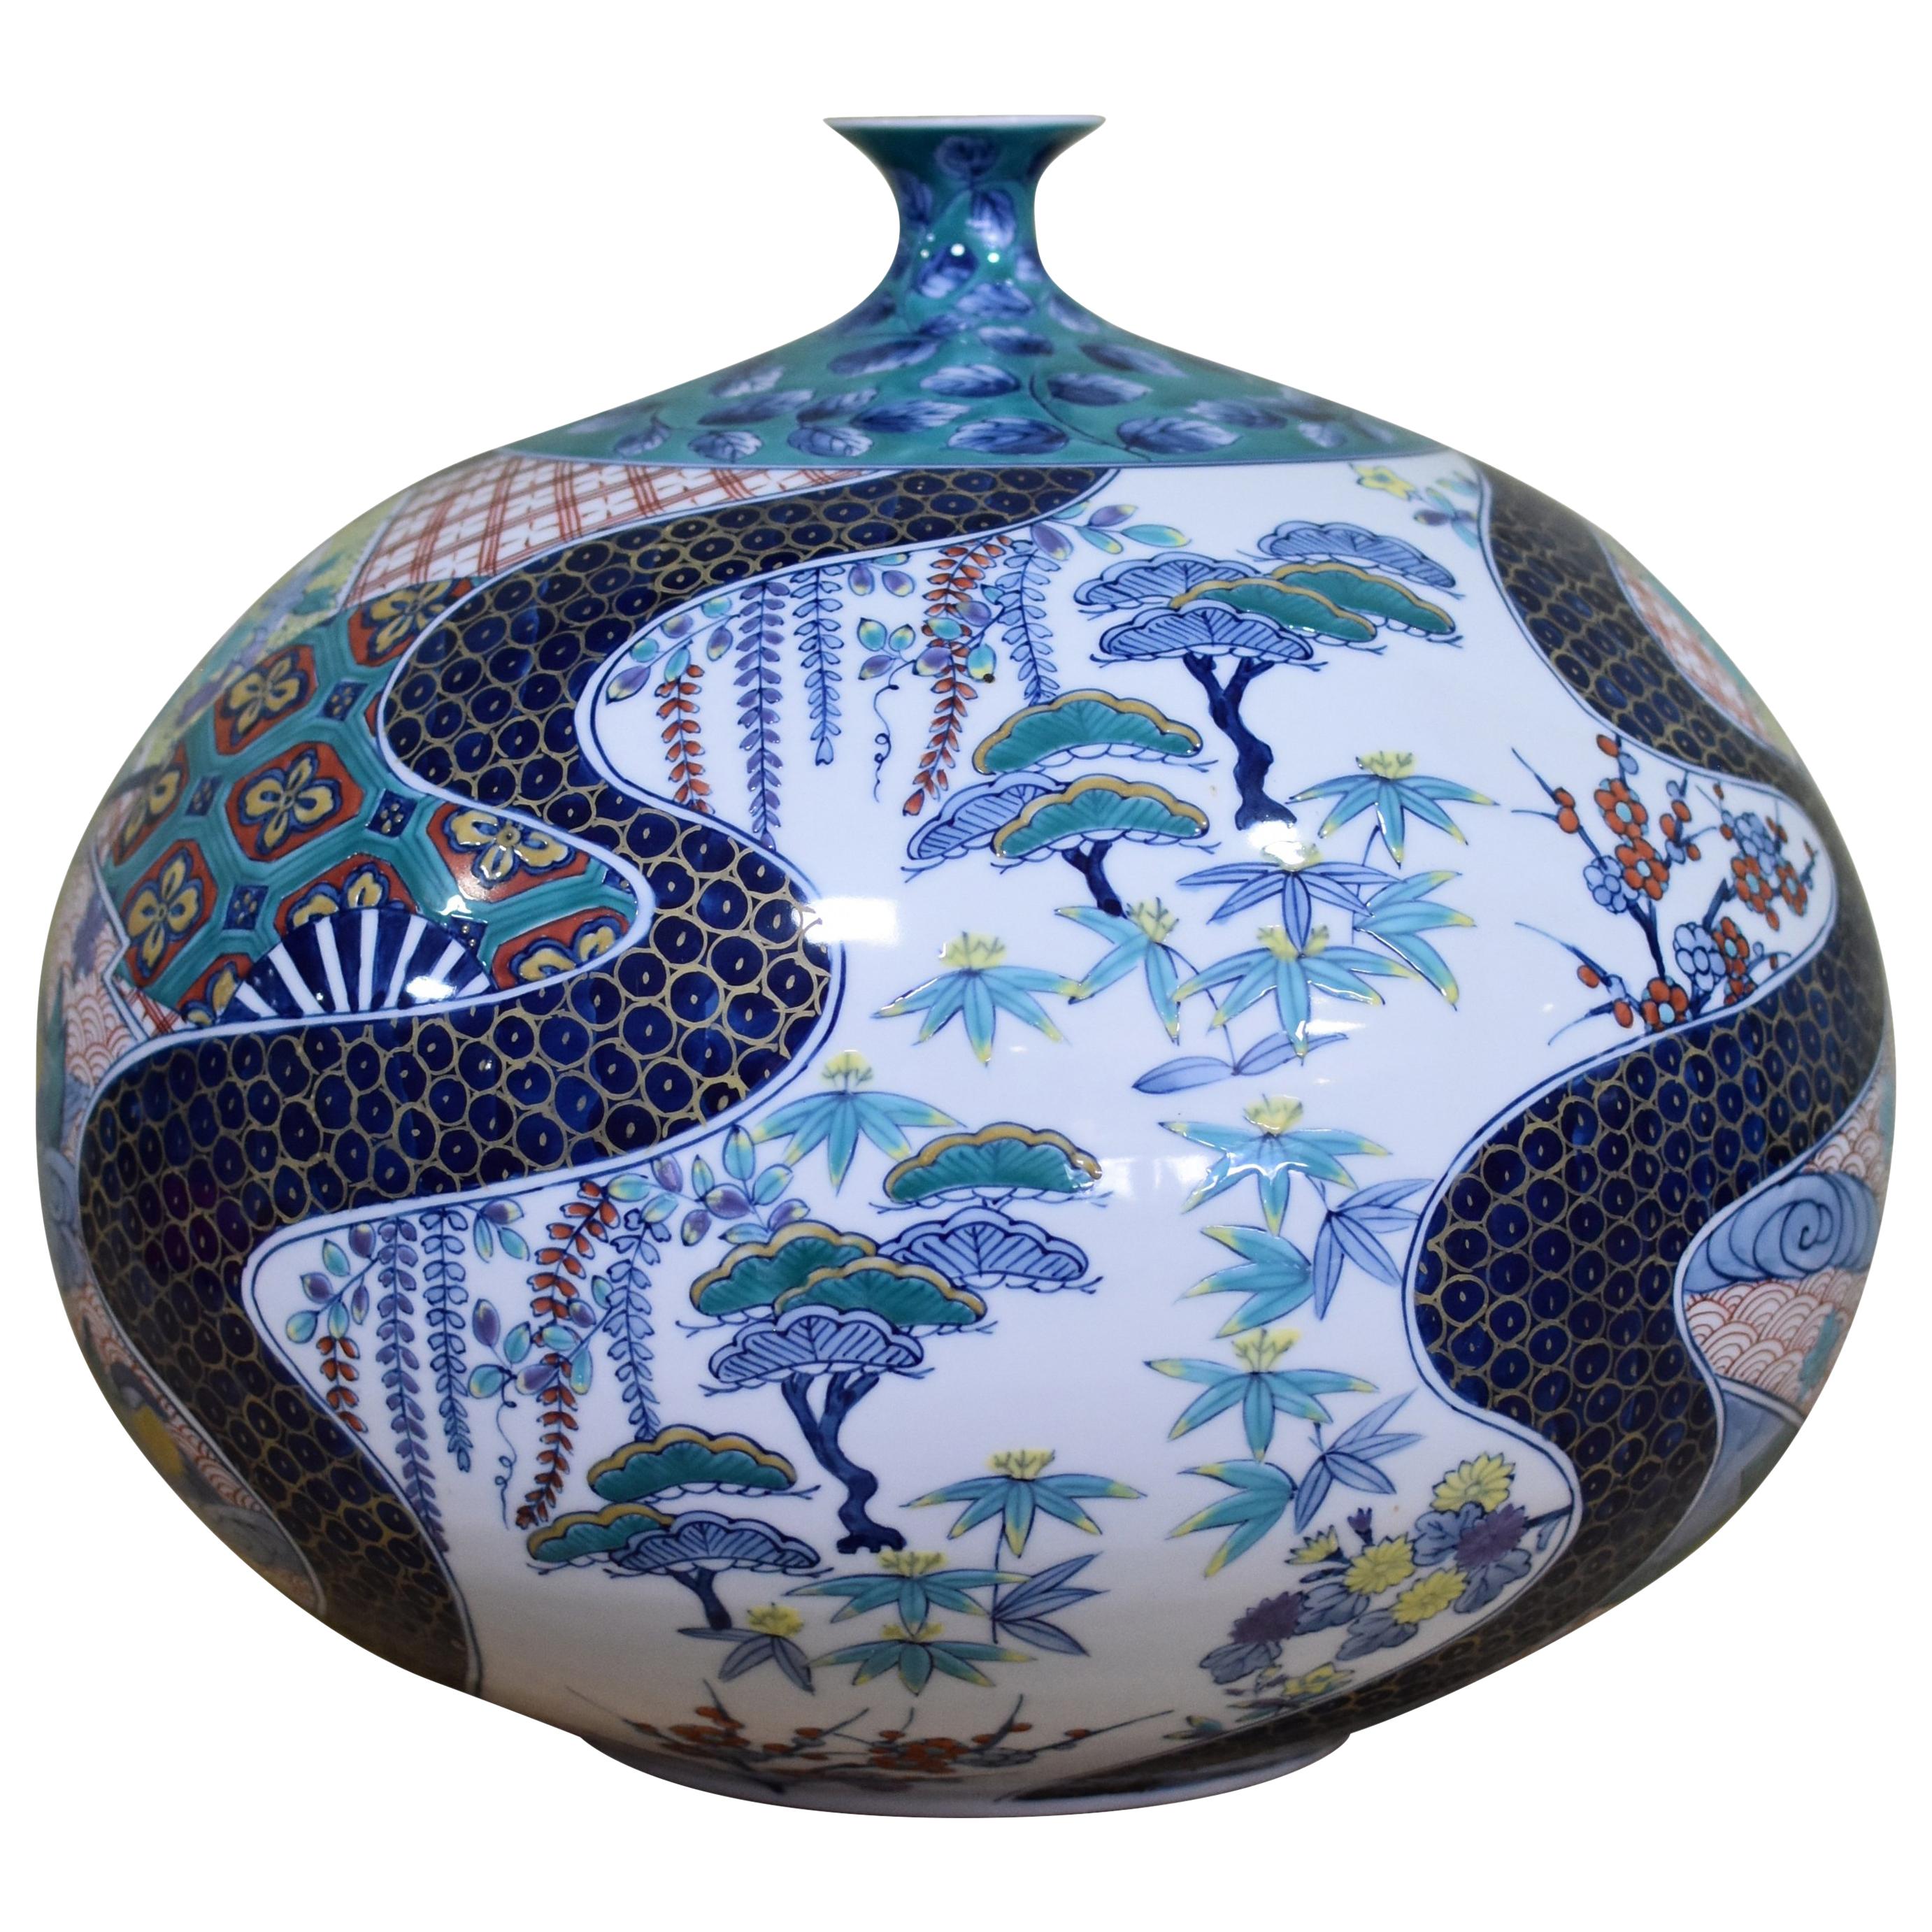 Large Blue Green Porcelain Vase by Japanese Master Artist